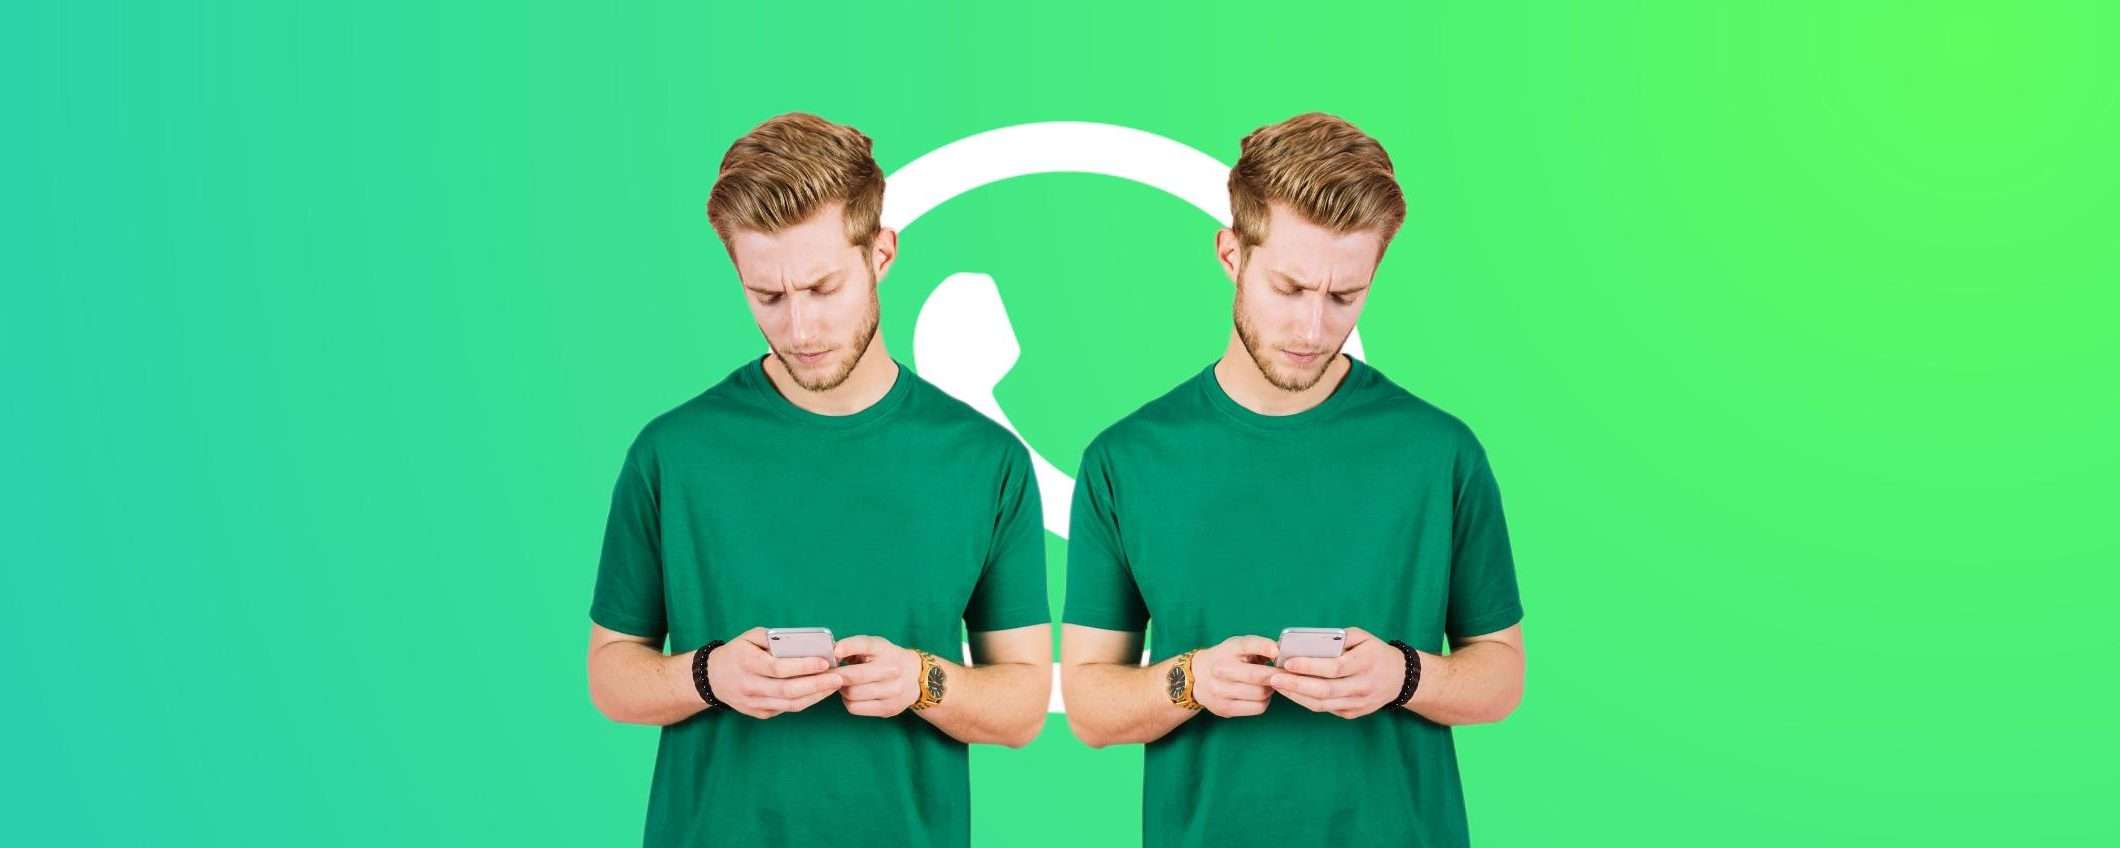 WhatsApp: il TRUCCO per usare lo stesso account su due smartphone